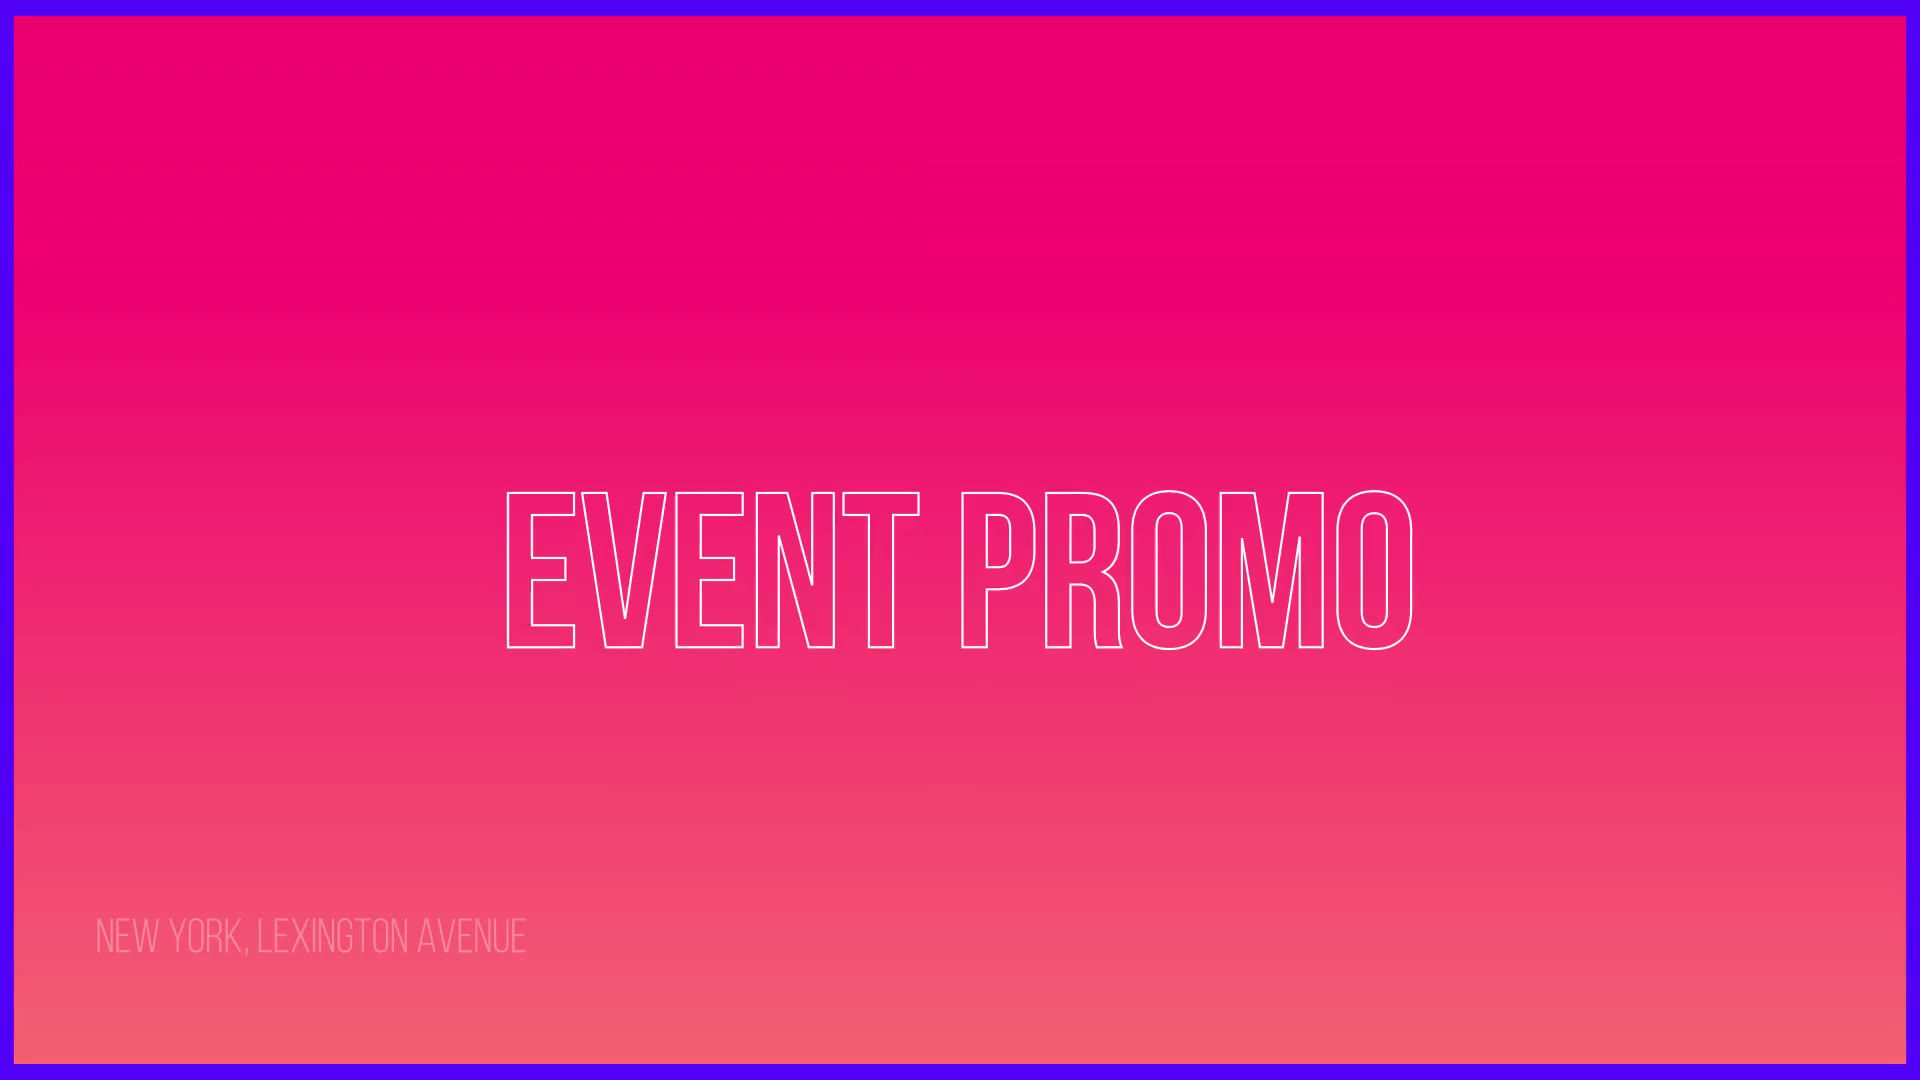 Event Promo for Premiere Videohive 39373065 Premiere Pro Image 2